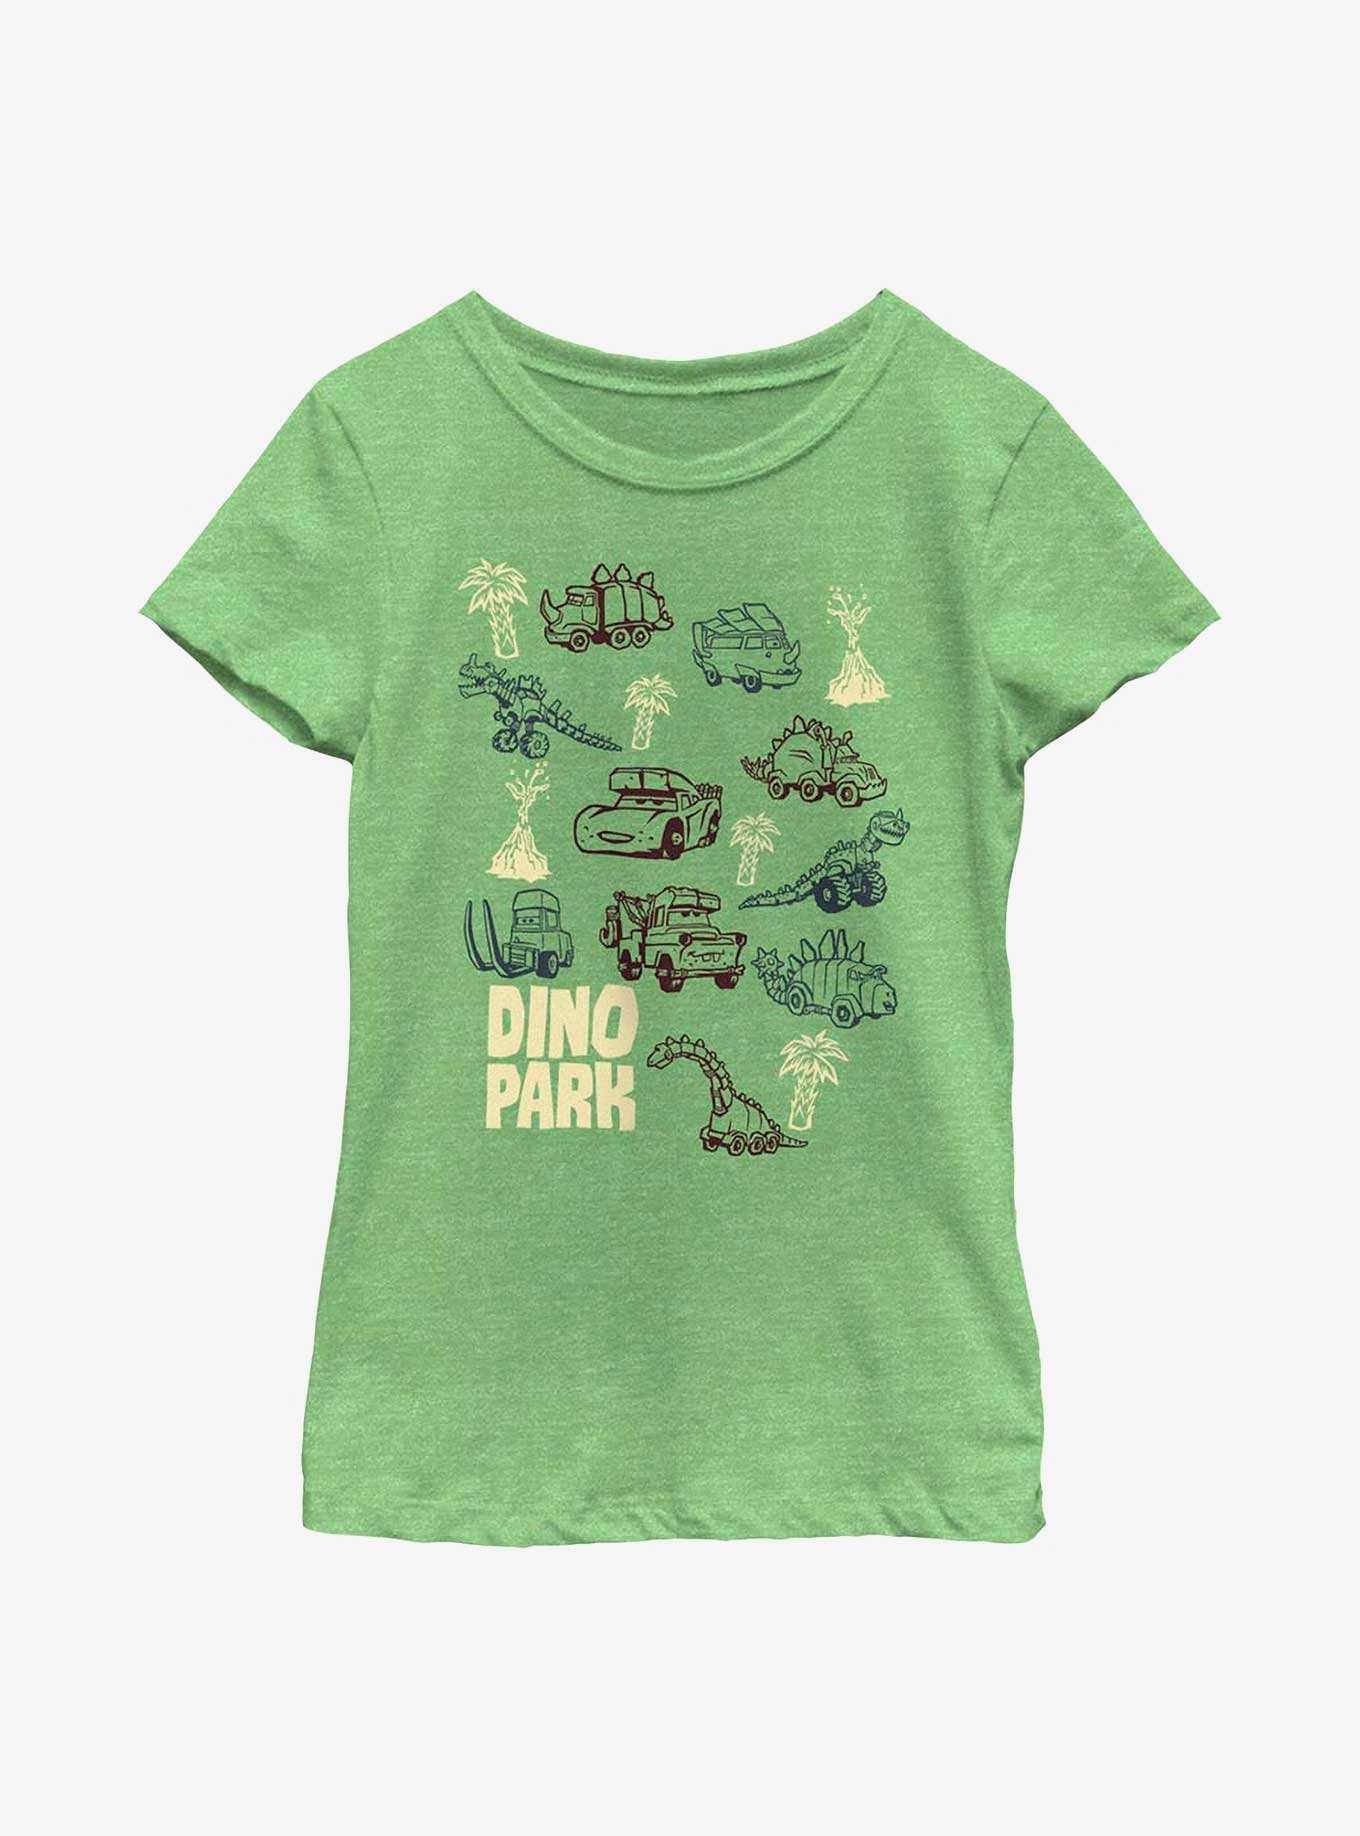 Disney Pixar Cars Dino Park Youth Girls T-Shirt, , hi-res